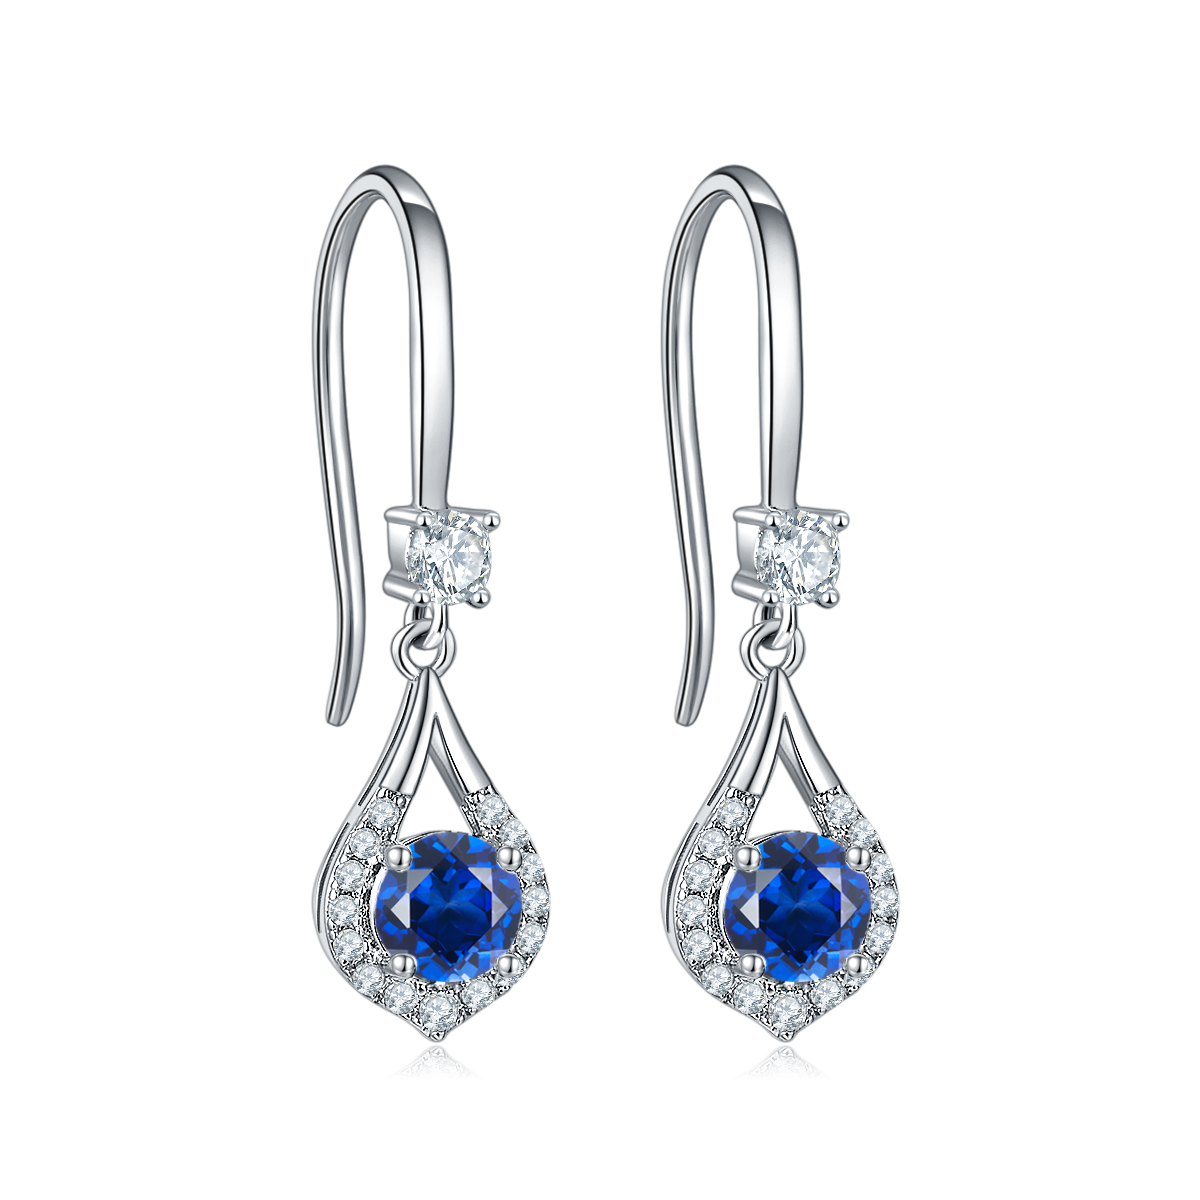 Blue Crystal Waterdrop Earrings for Women